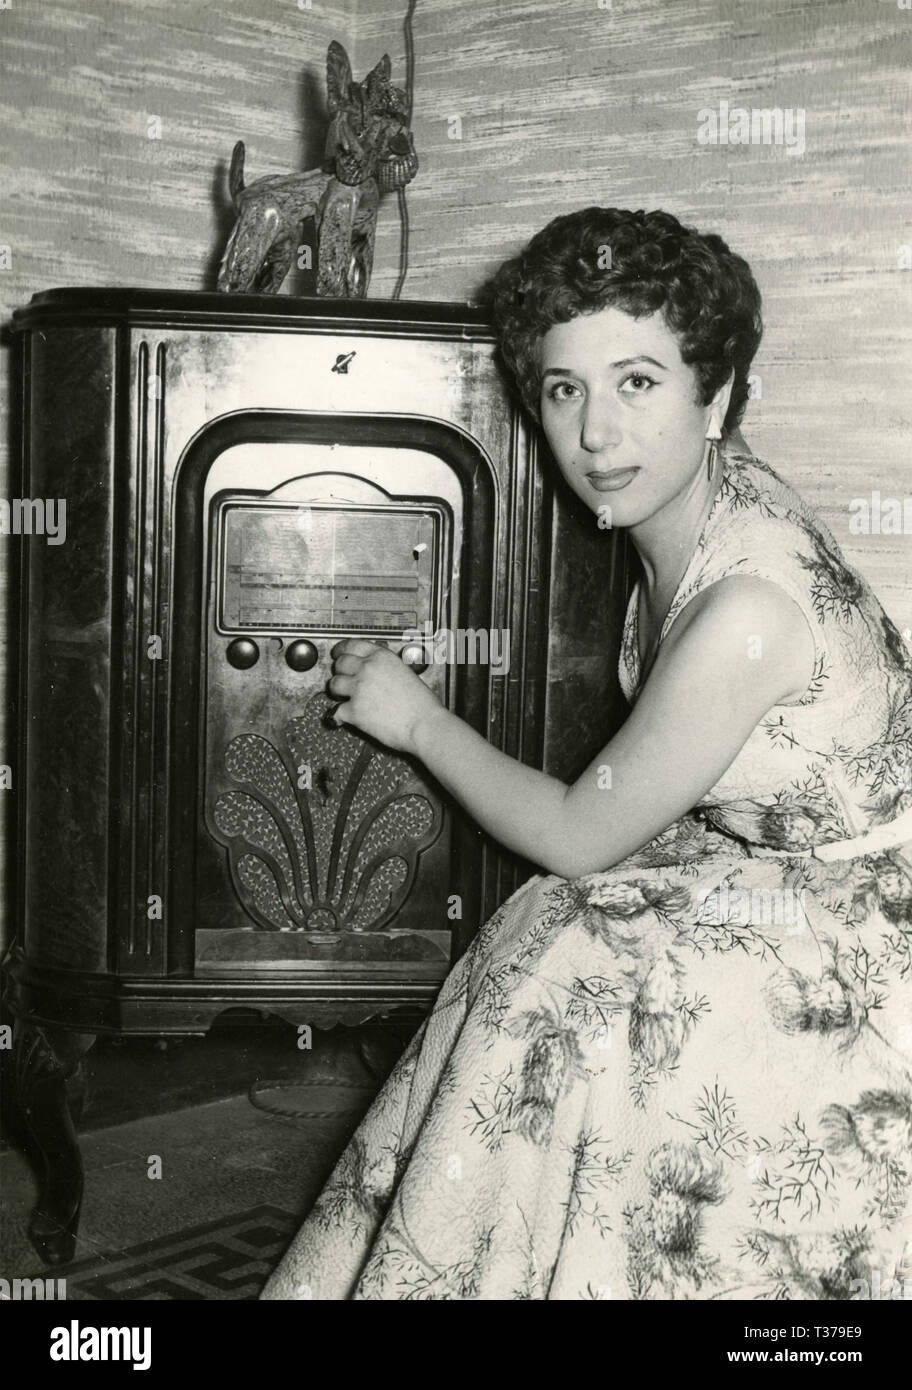 Femme posant avec la radio, Italie 1950 Banque D'Images